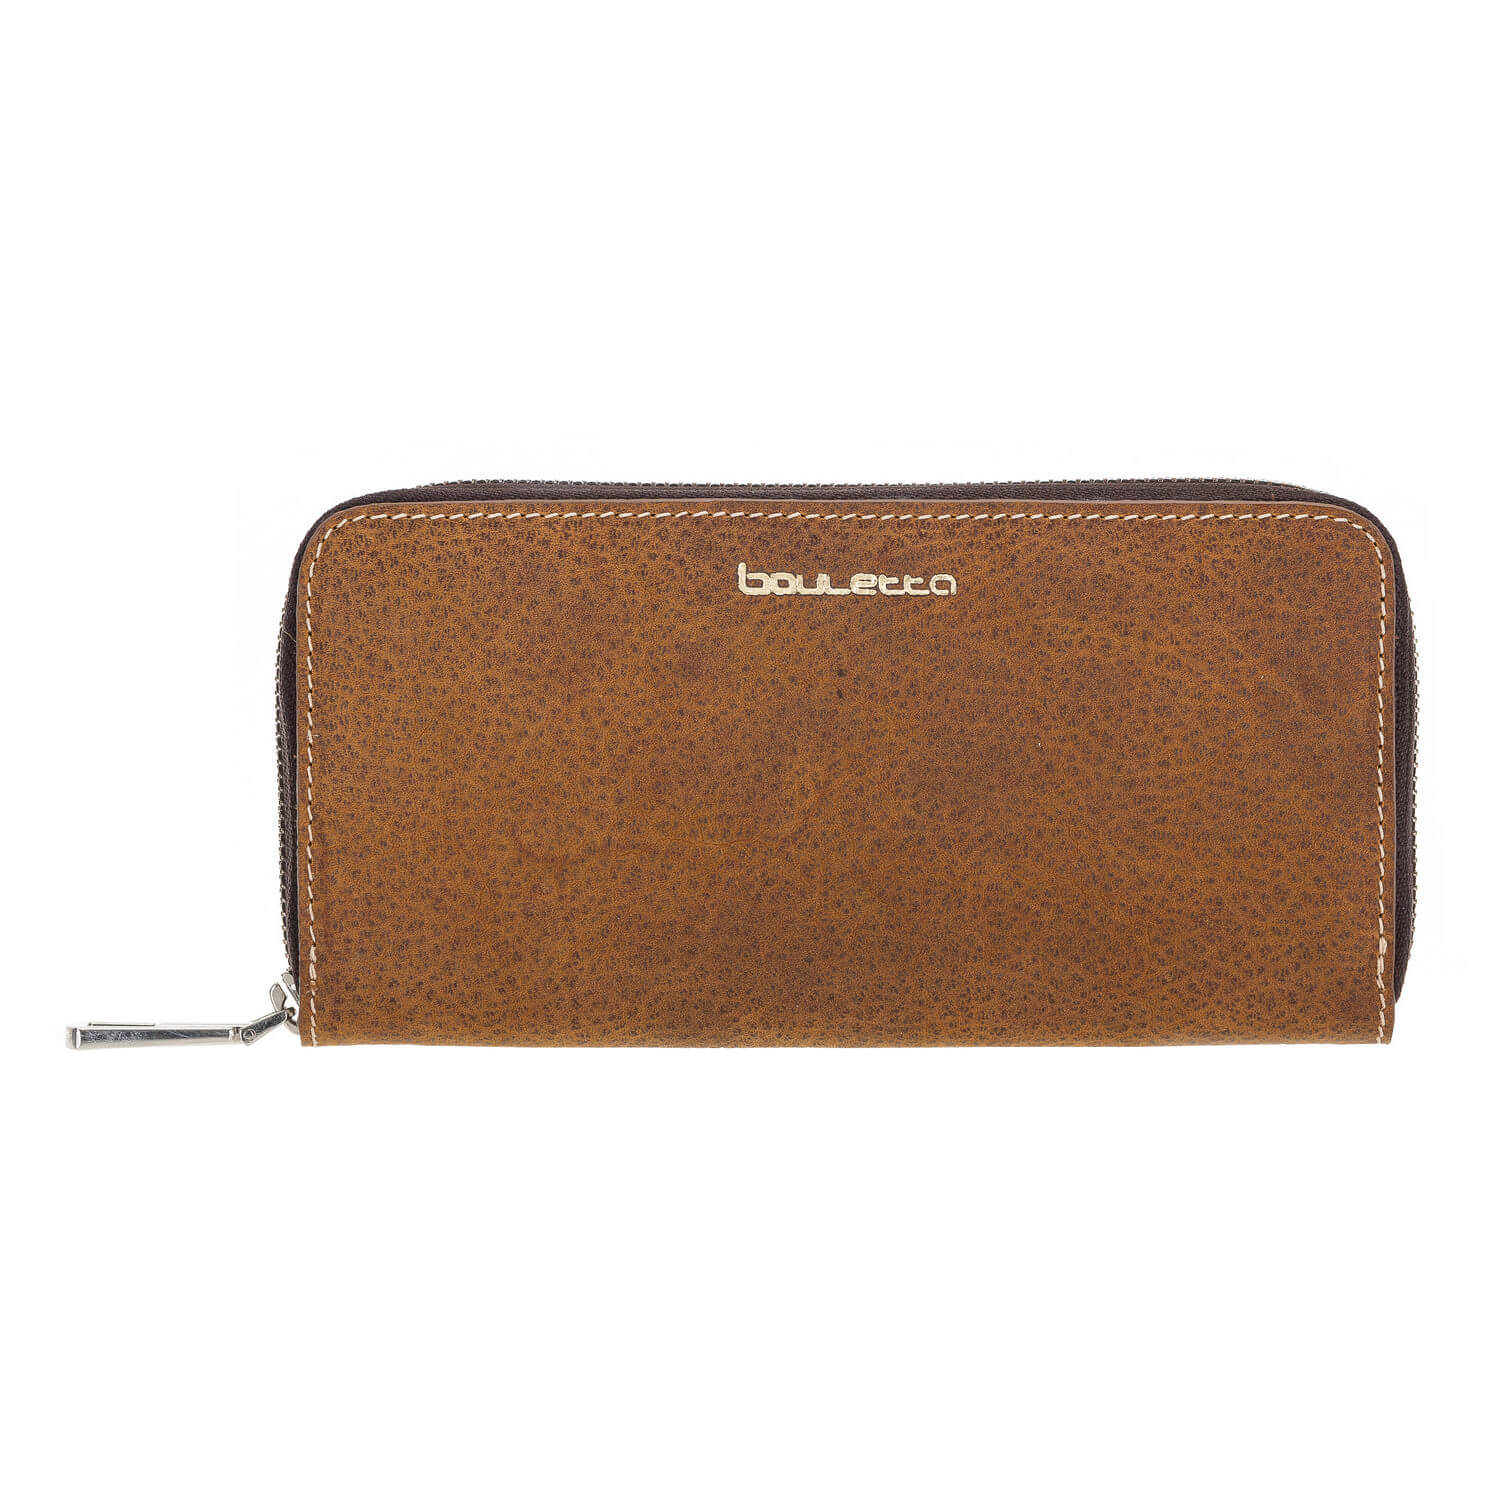 Seville Women's Leather Wallet